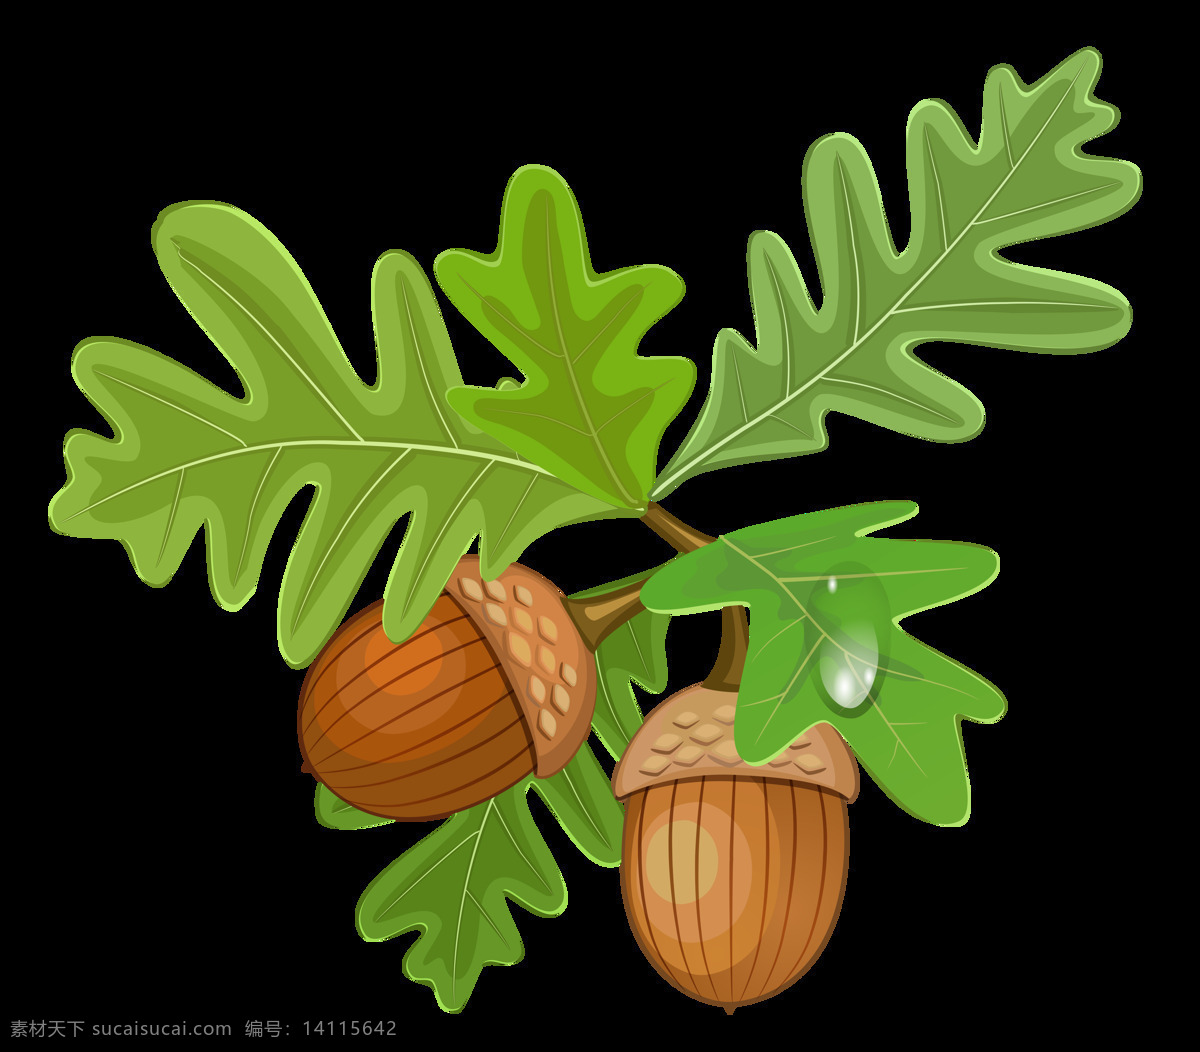 橡子 橡实 橡果 果实 坚果 绿叶 橡树 松鼠零食 松子 松果 设计素材 海报素材 生物世界